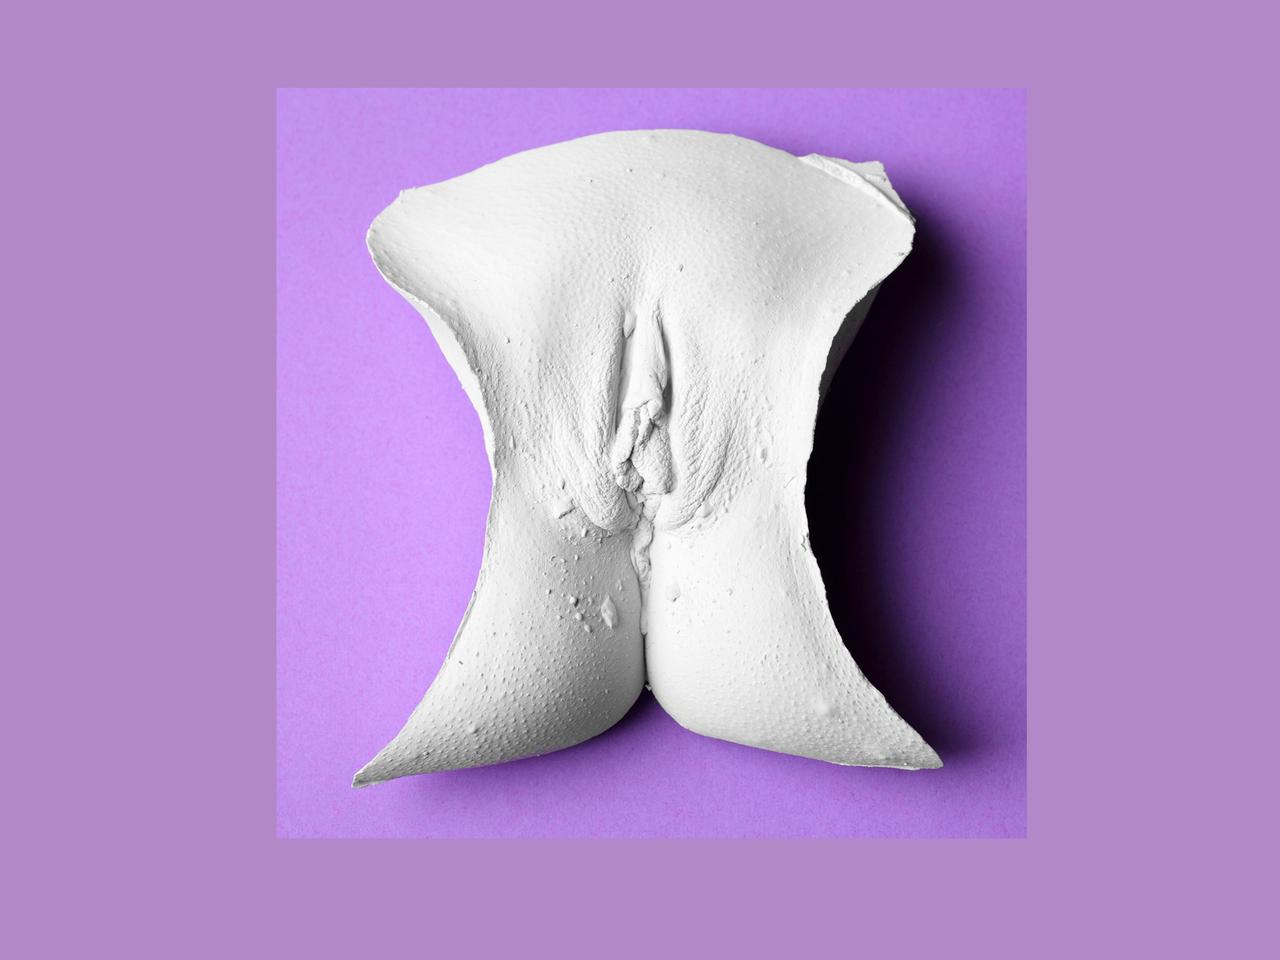 Die Abformung einer Vulva auf einem lila Hintergrund.